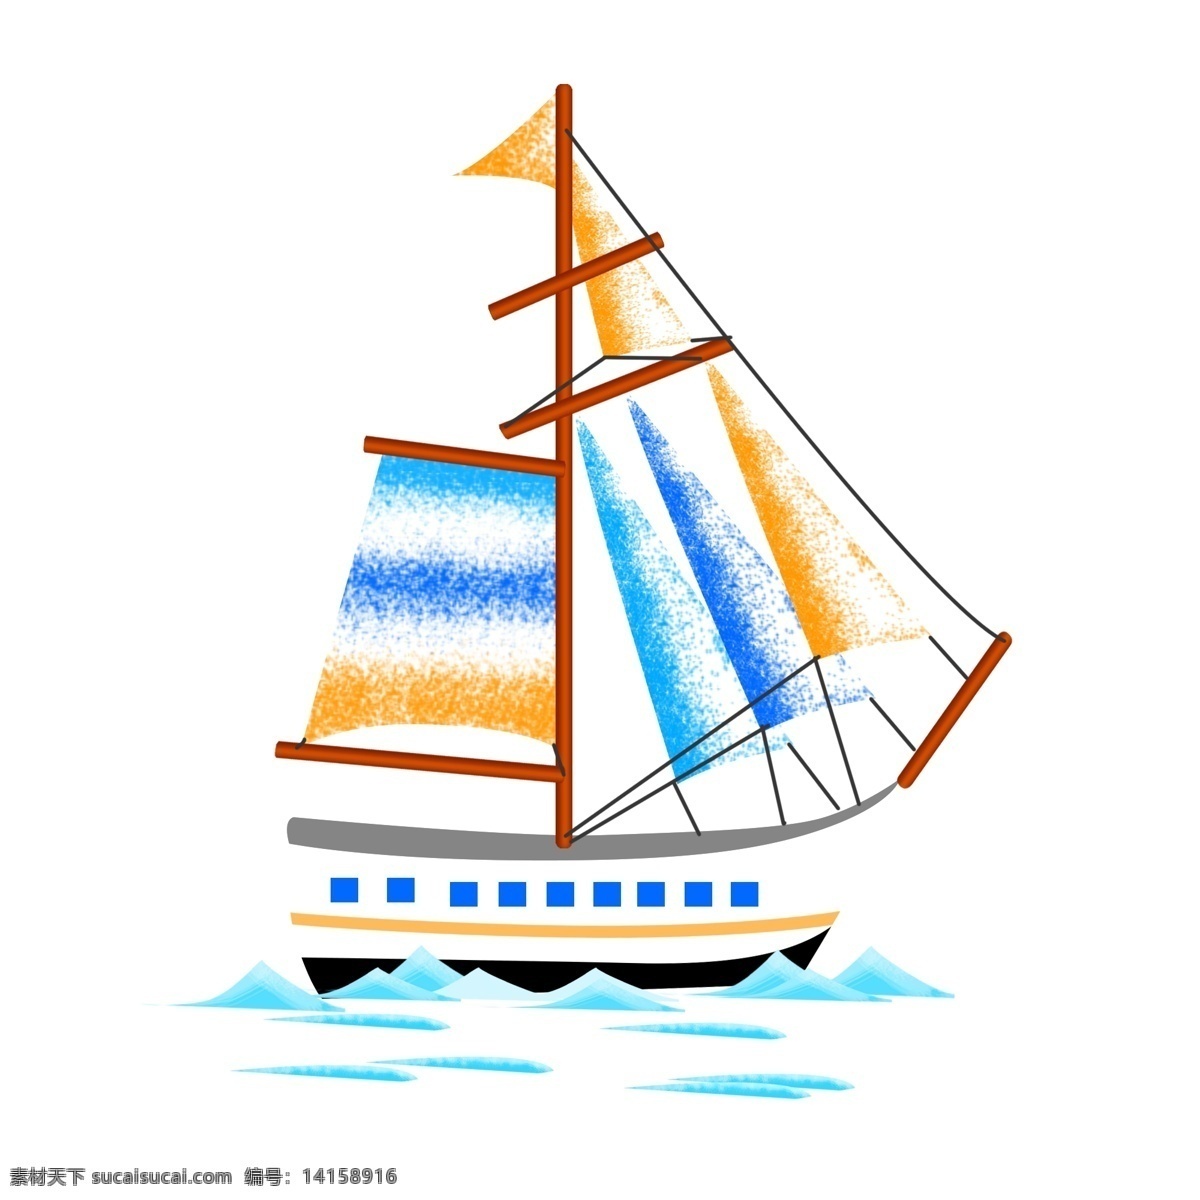 出海的帆船 帆船 小船 出海